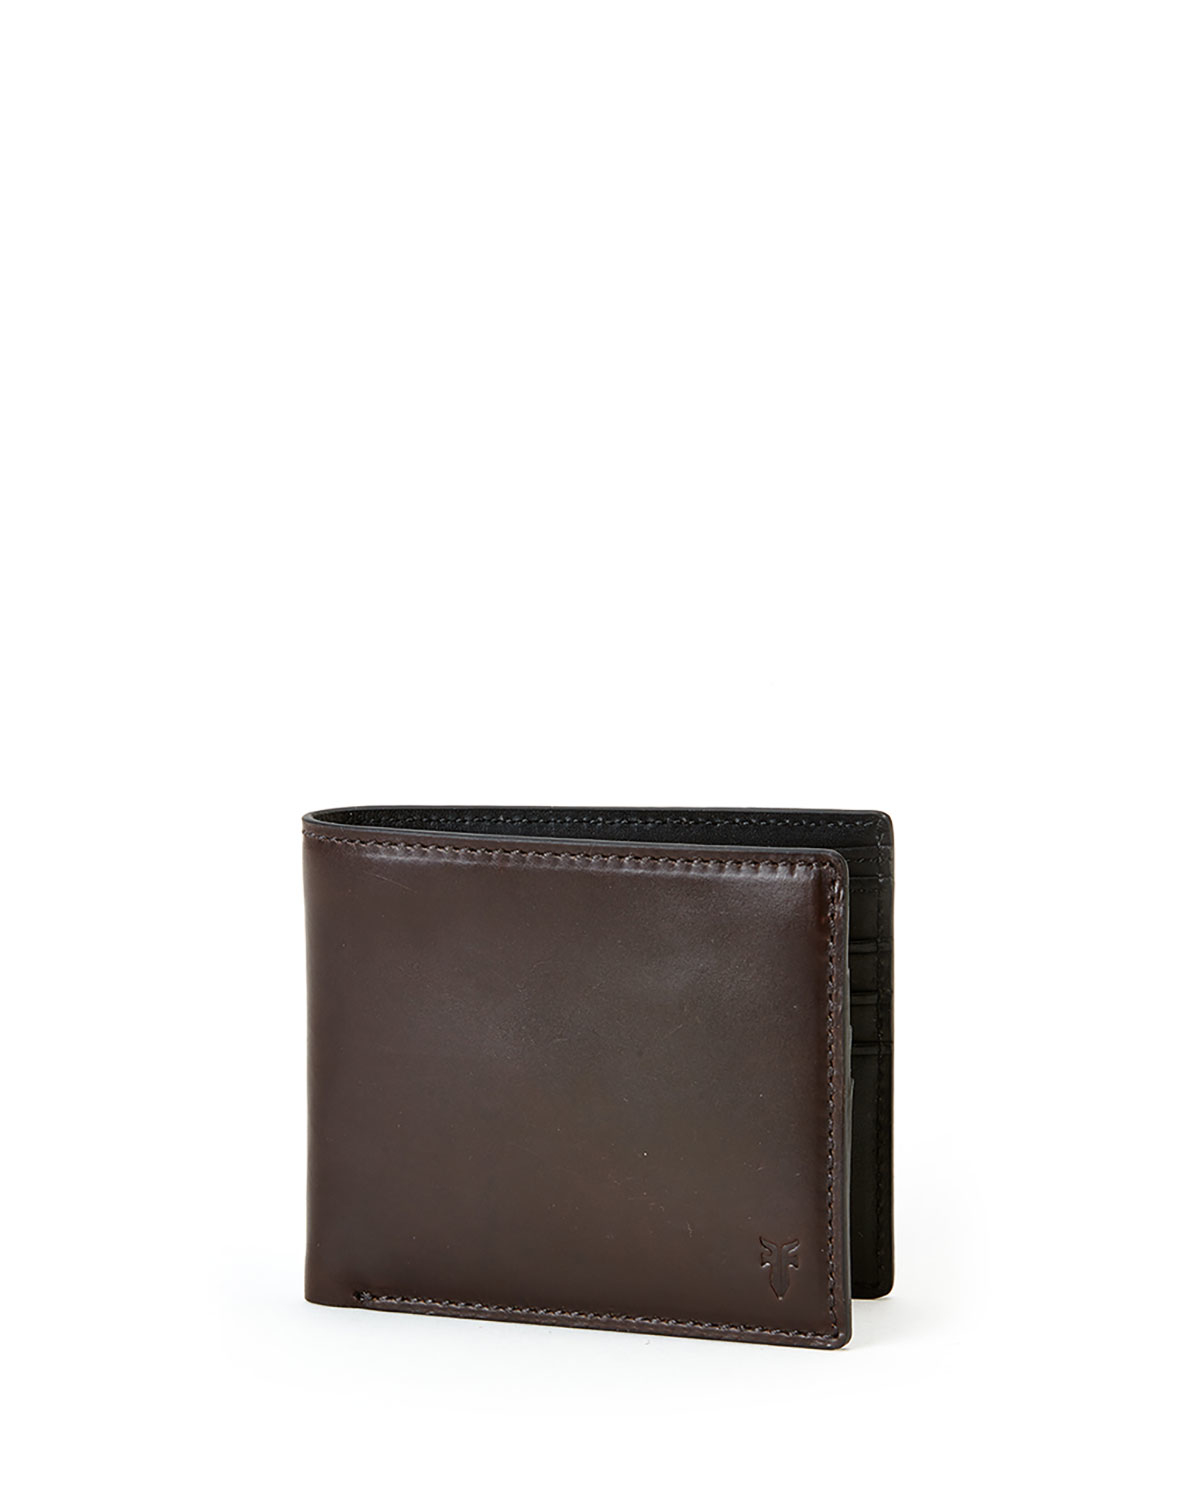 Lyst - Frye David Leather Bi-fold Wallet in Brown for Men